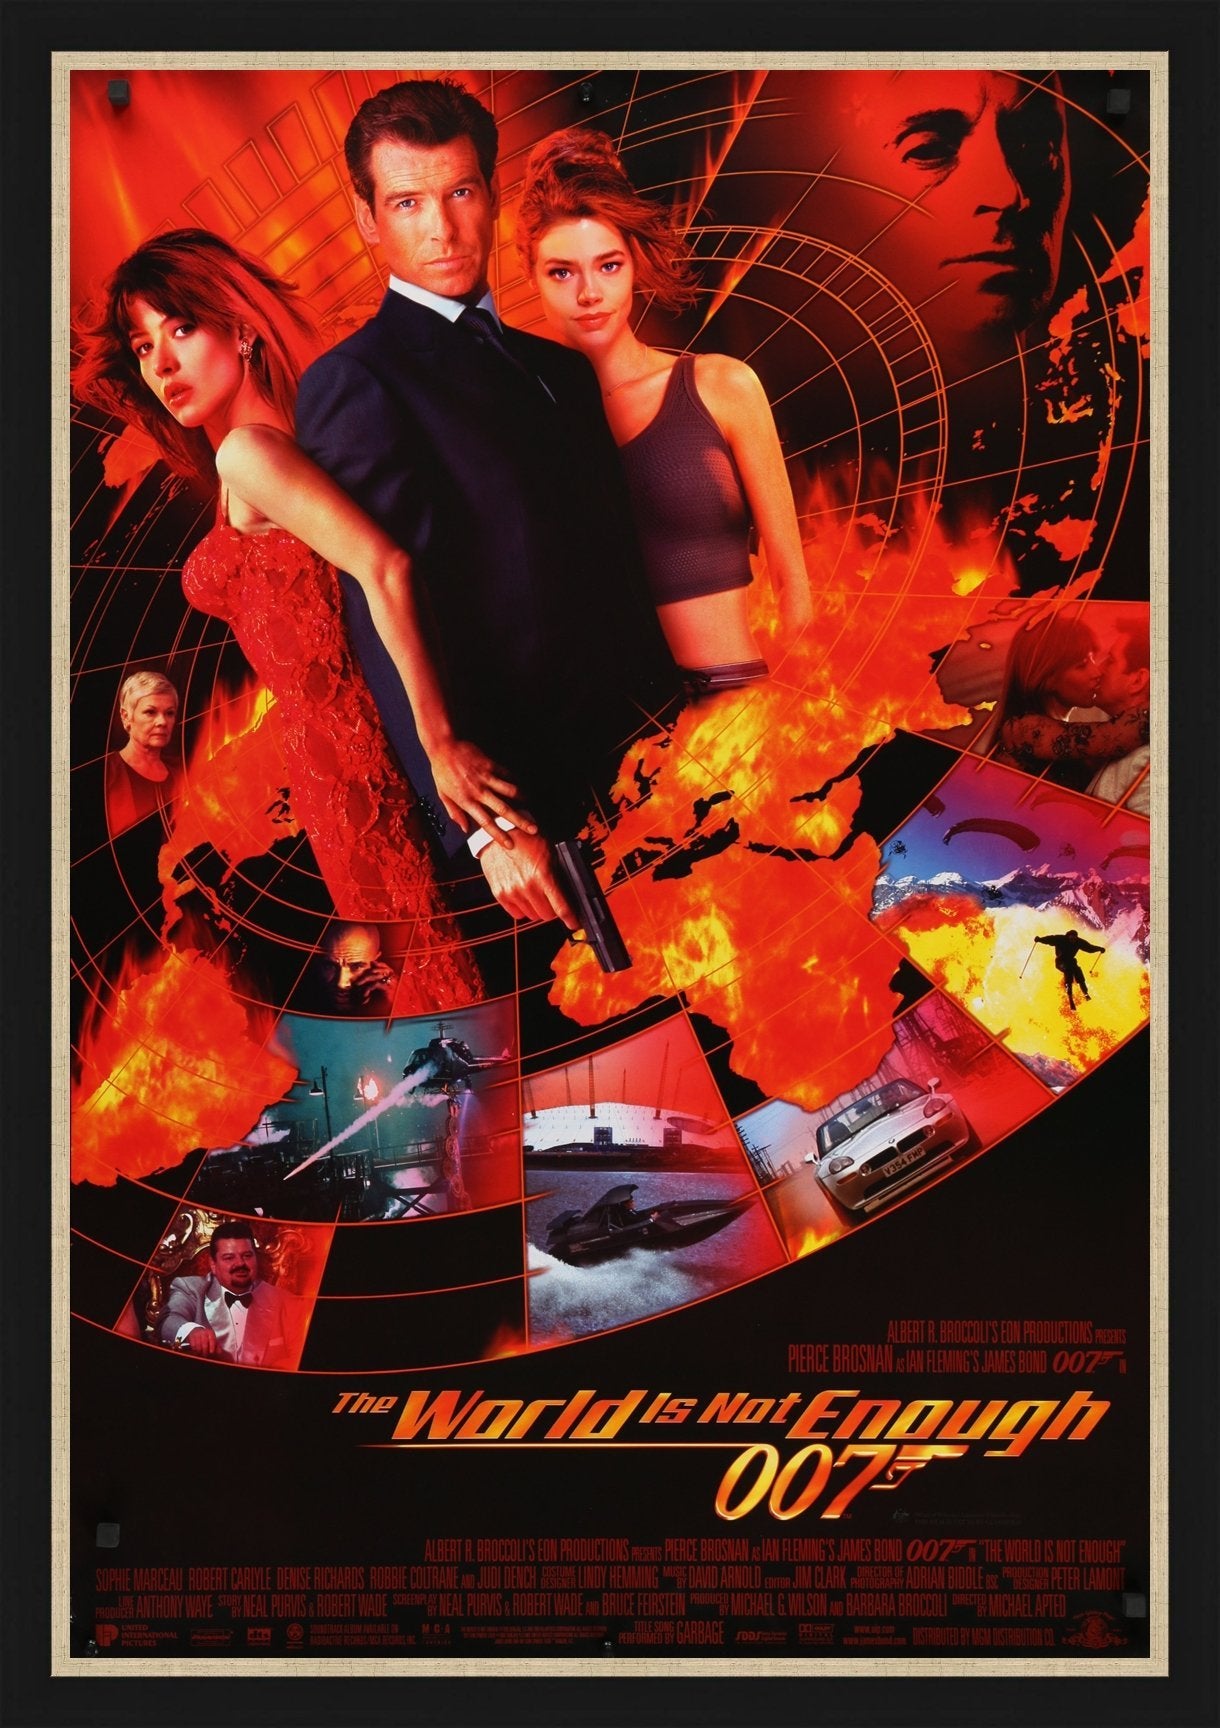 An original movie poster for the James Bond film 